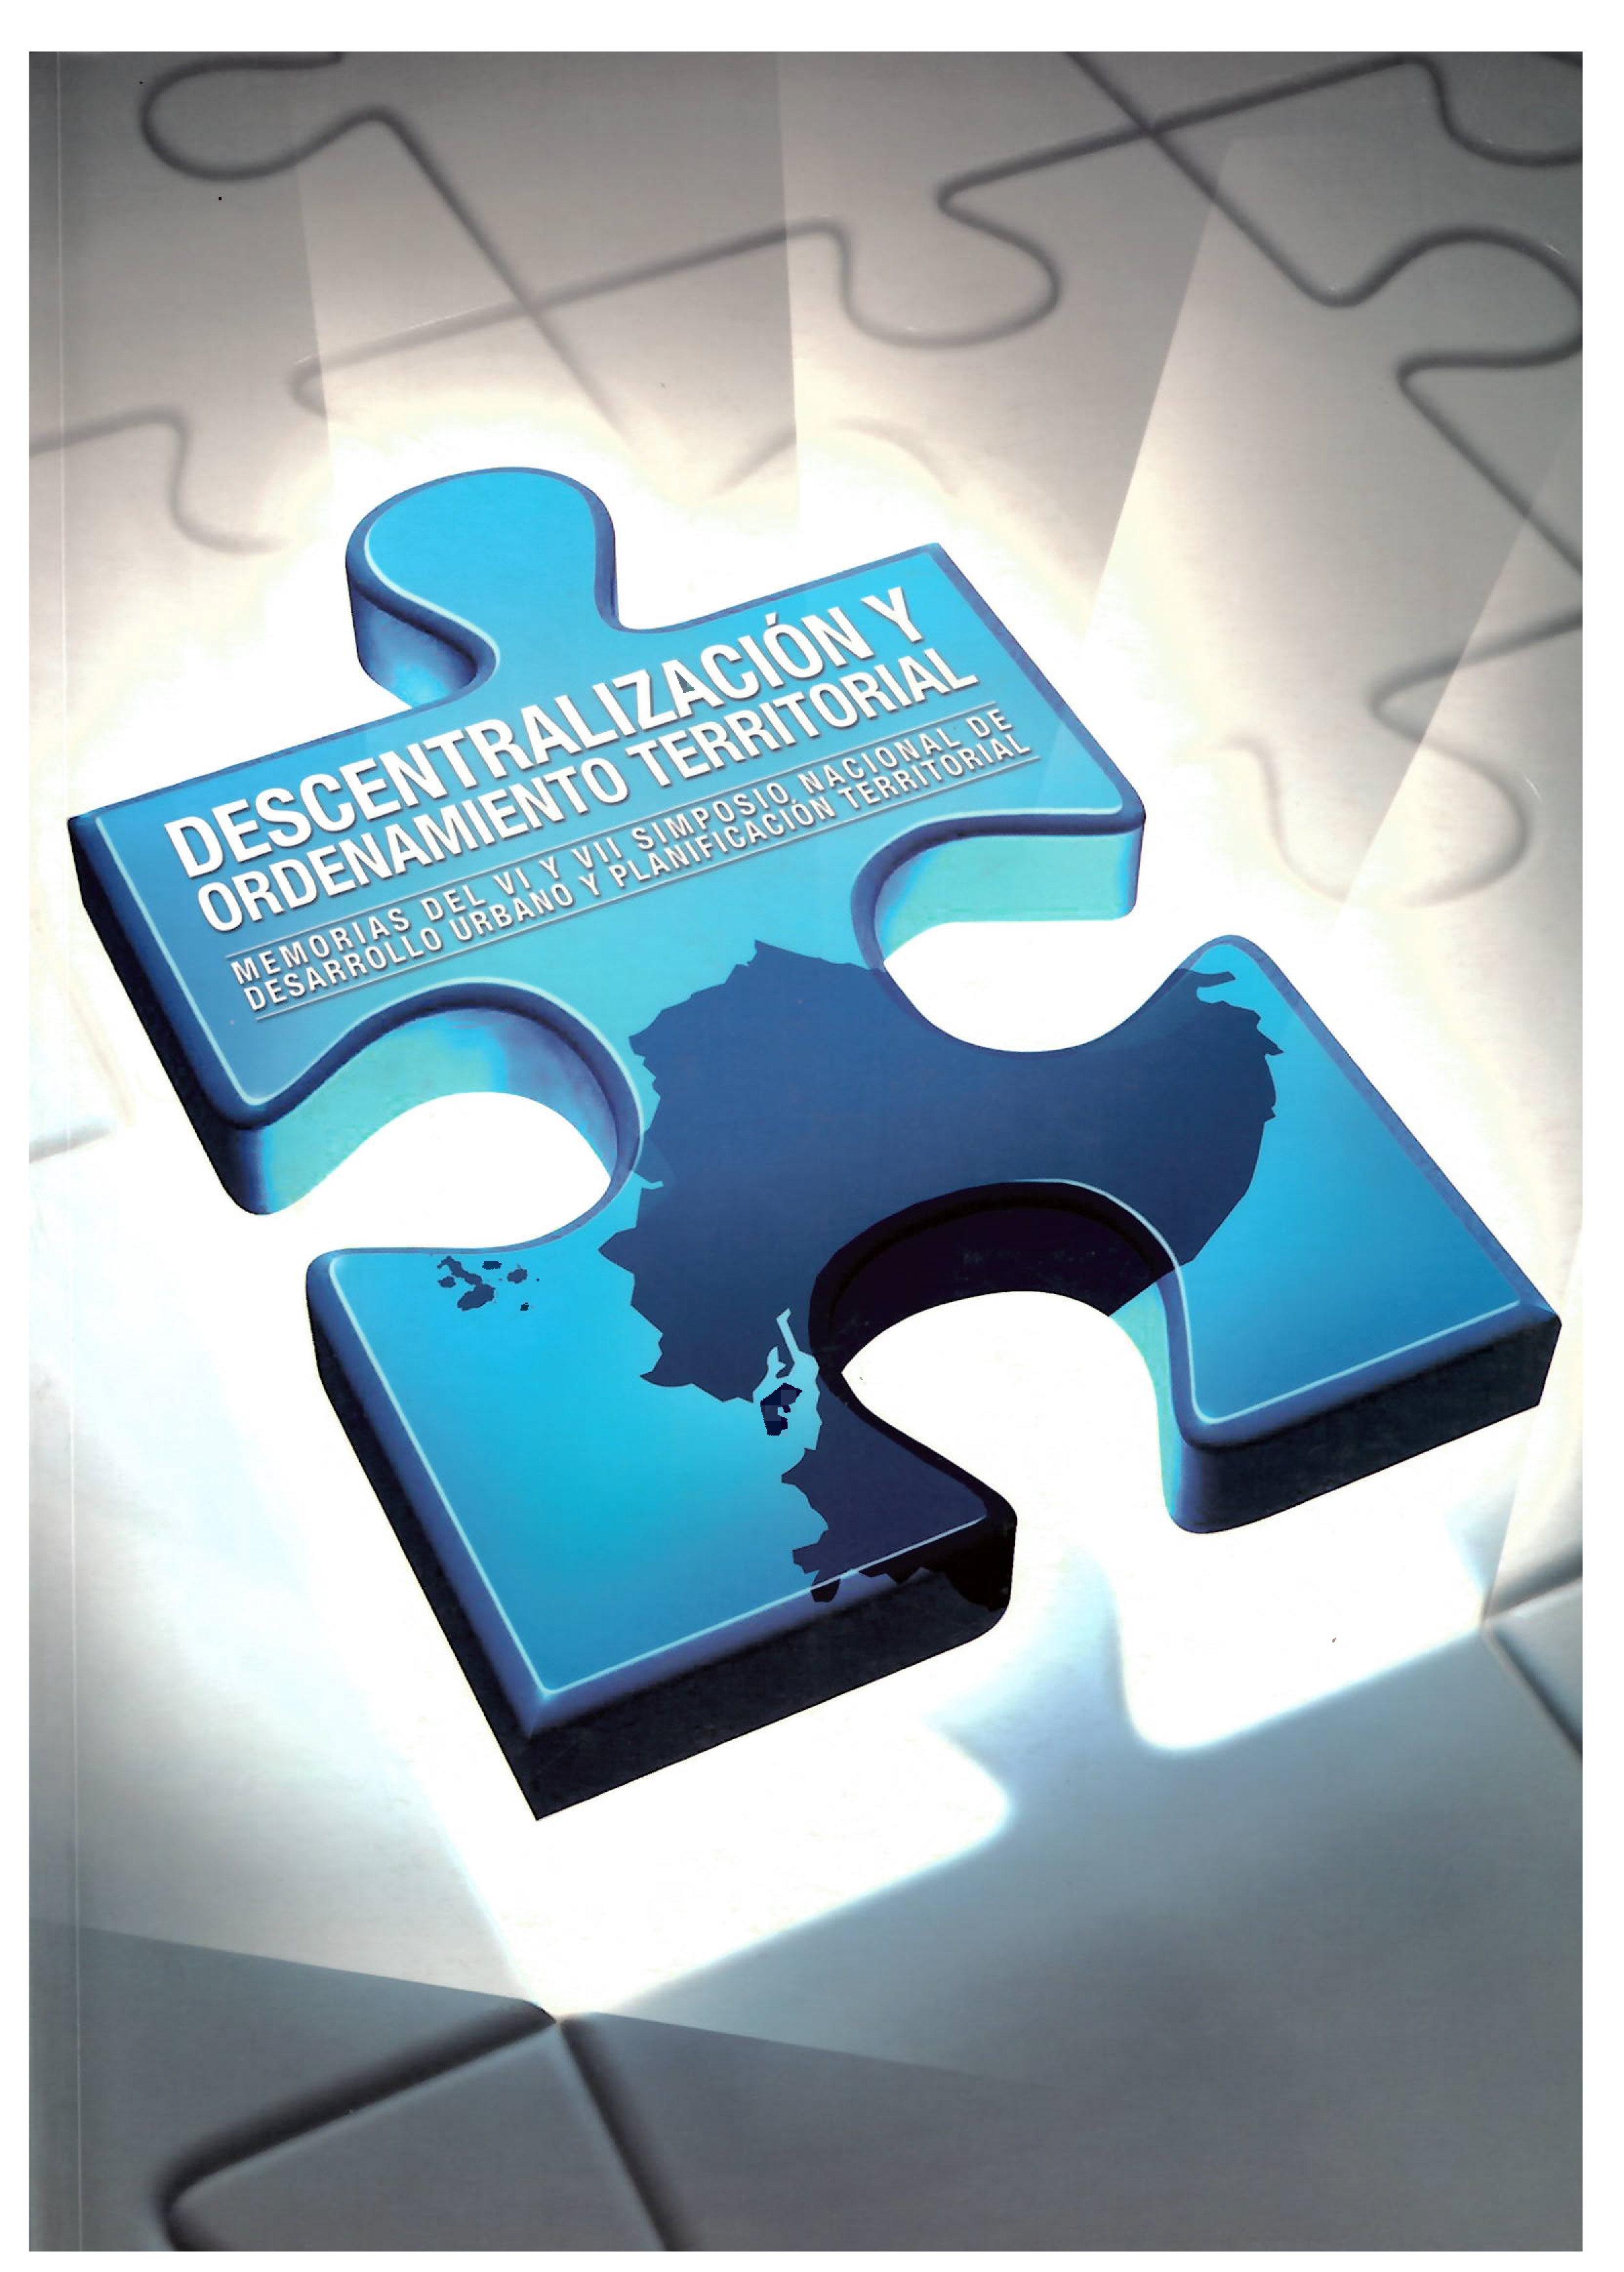 Imagen de portada del libro Descentralización y ordenamiento territorial